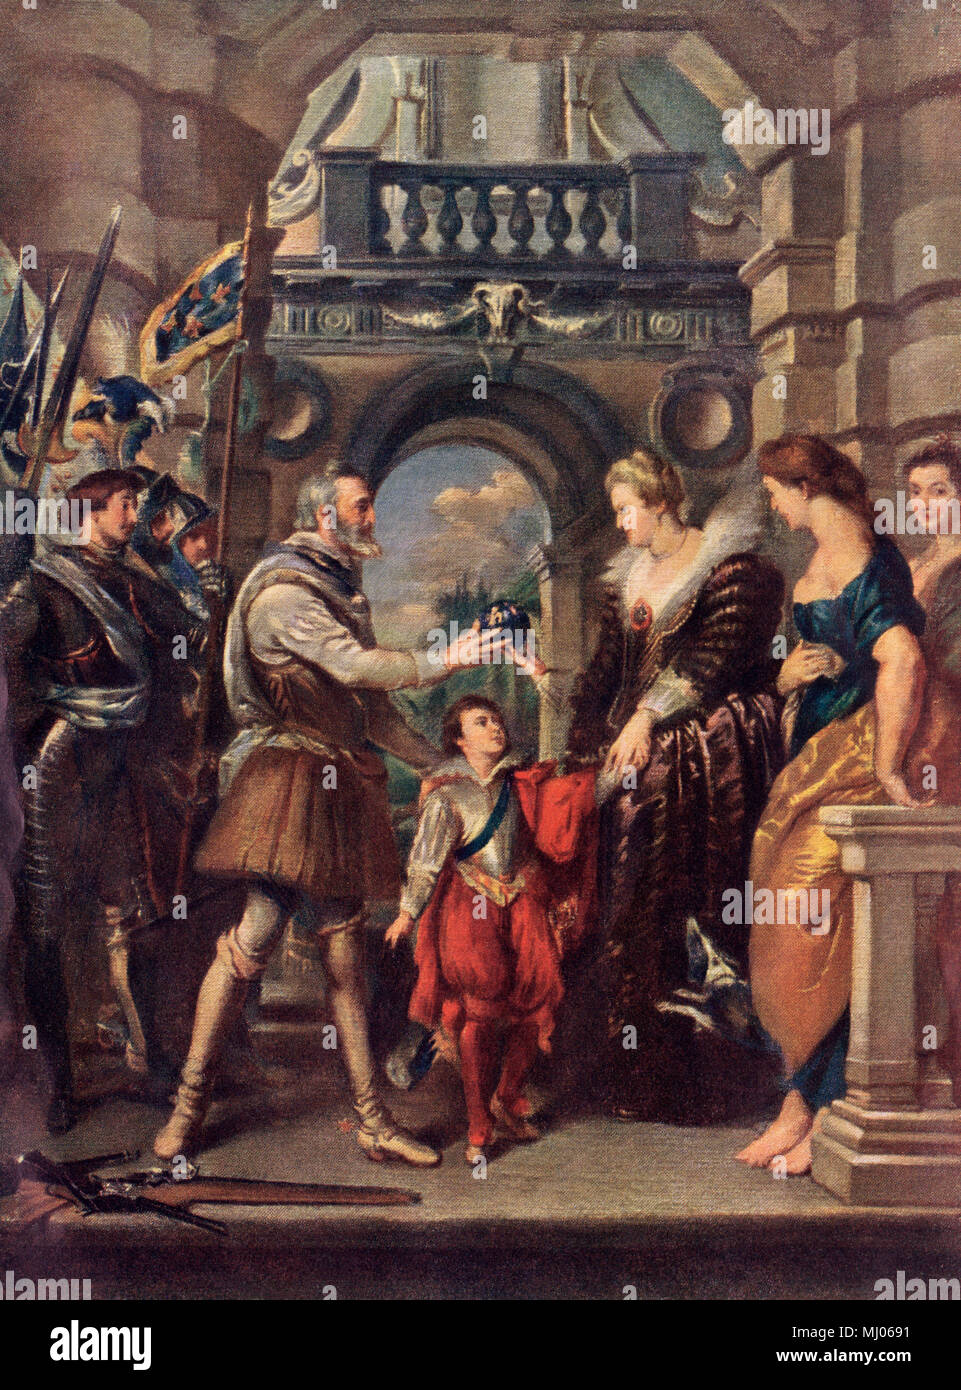 König Heinrich IV. von Frankreich mit Marie de Medici. Gedruckte farbige Lithographie von Rubens Gemälde Stockfoto